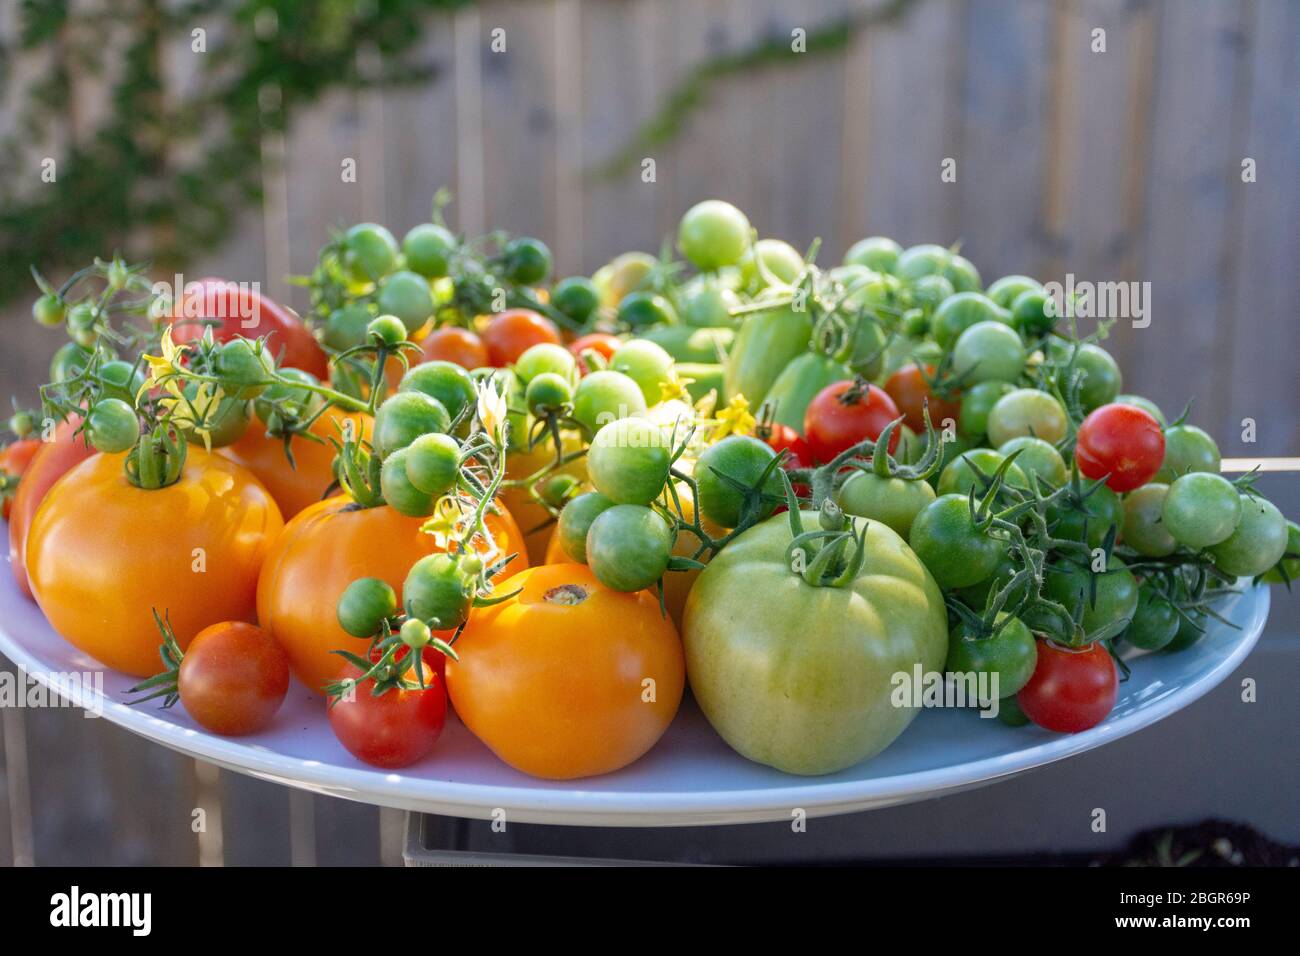 Un grande piatto di pomodori appena raccolti dal giardino, parte della crescita la vostra tendenza alimentare verso uno stile di vita più sostenibile e frugale. Foto Stock